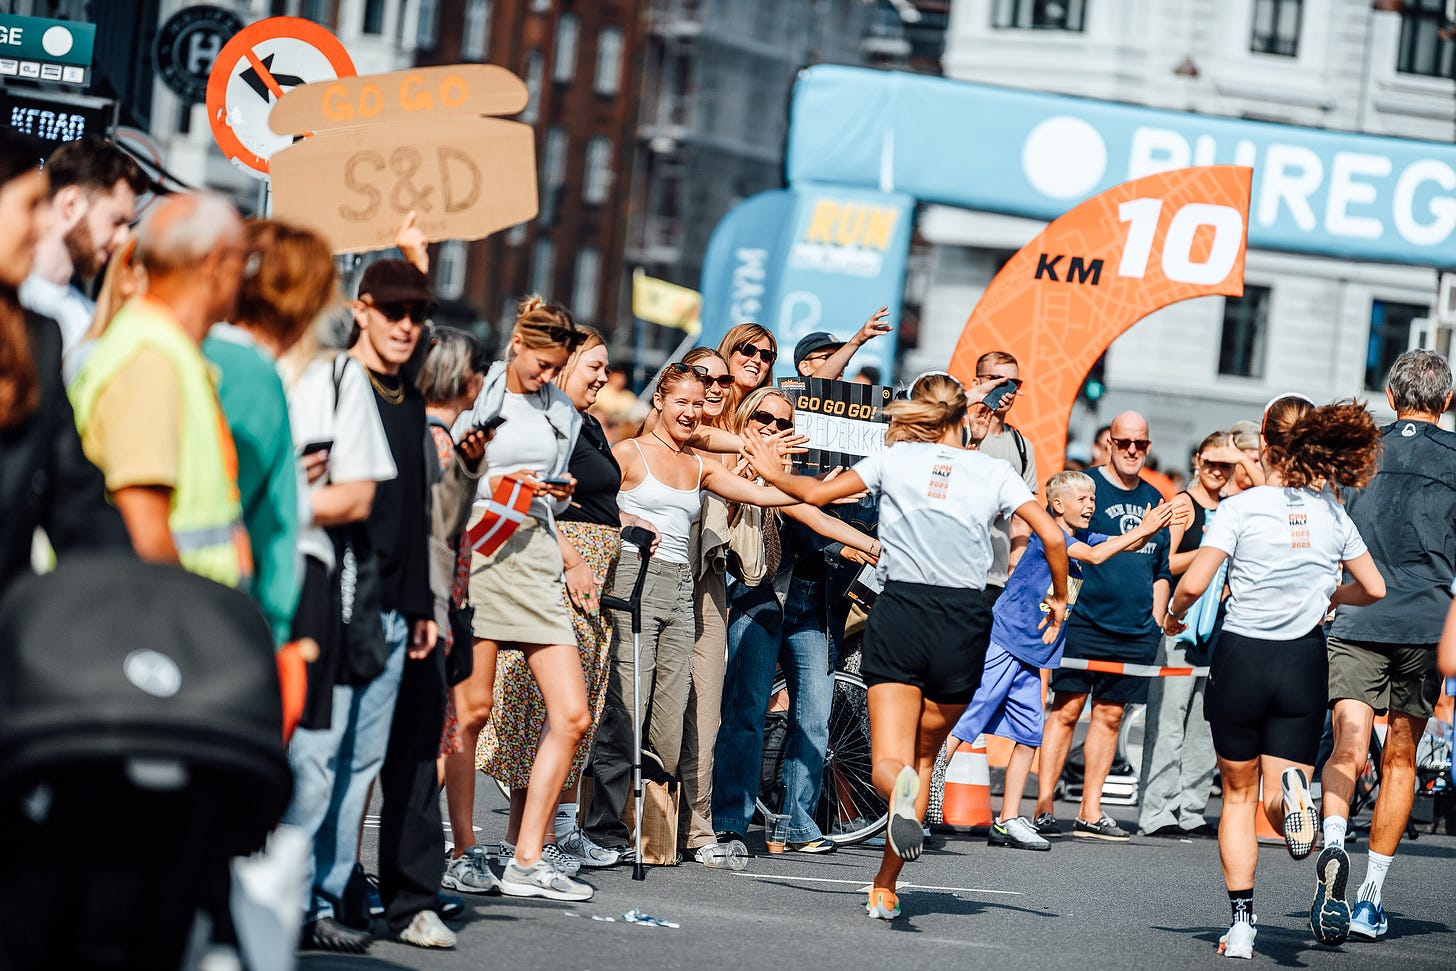 Crowd support at the Copenhagen Half Marathon